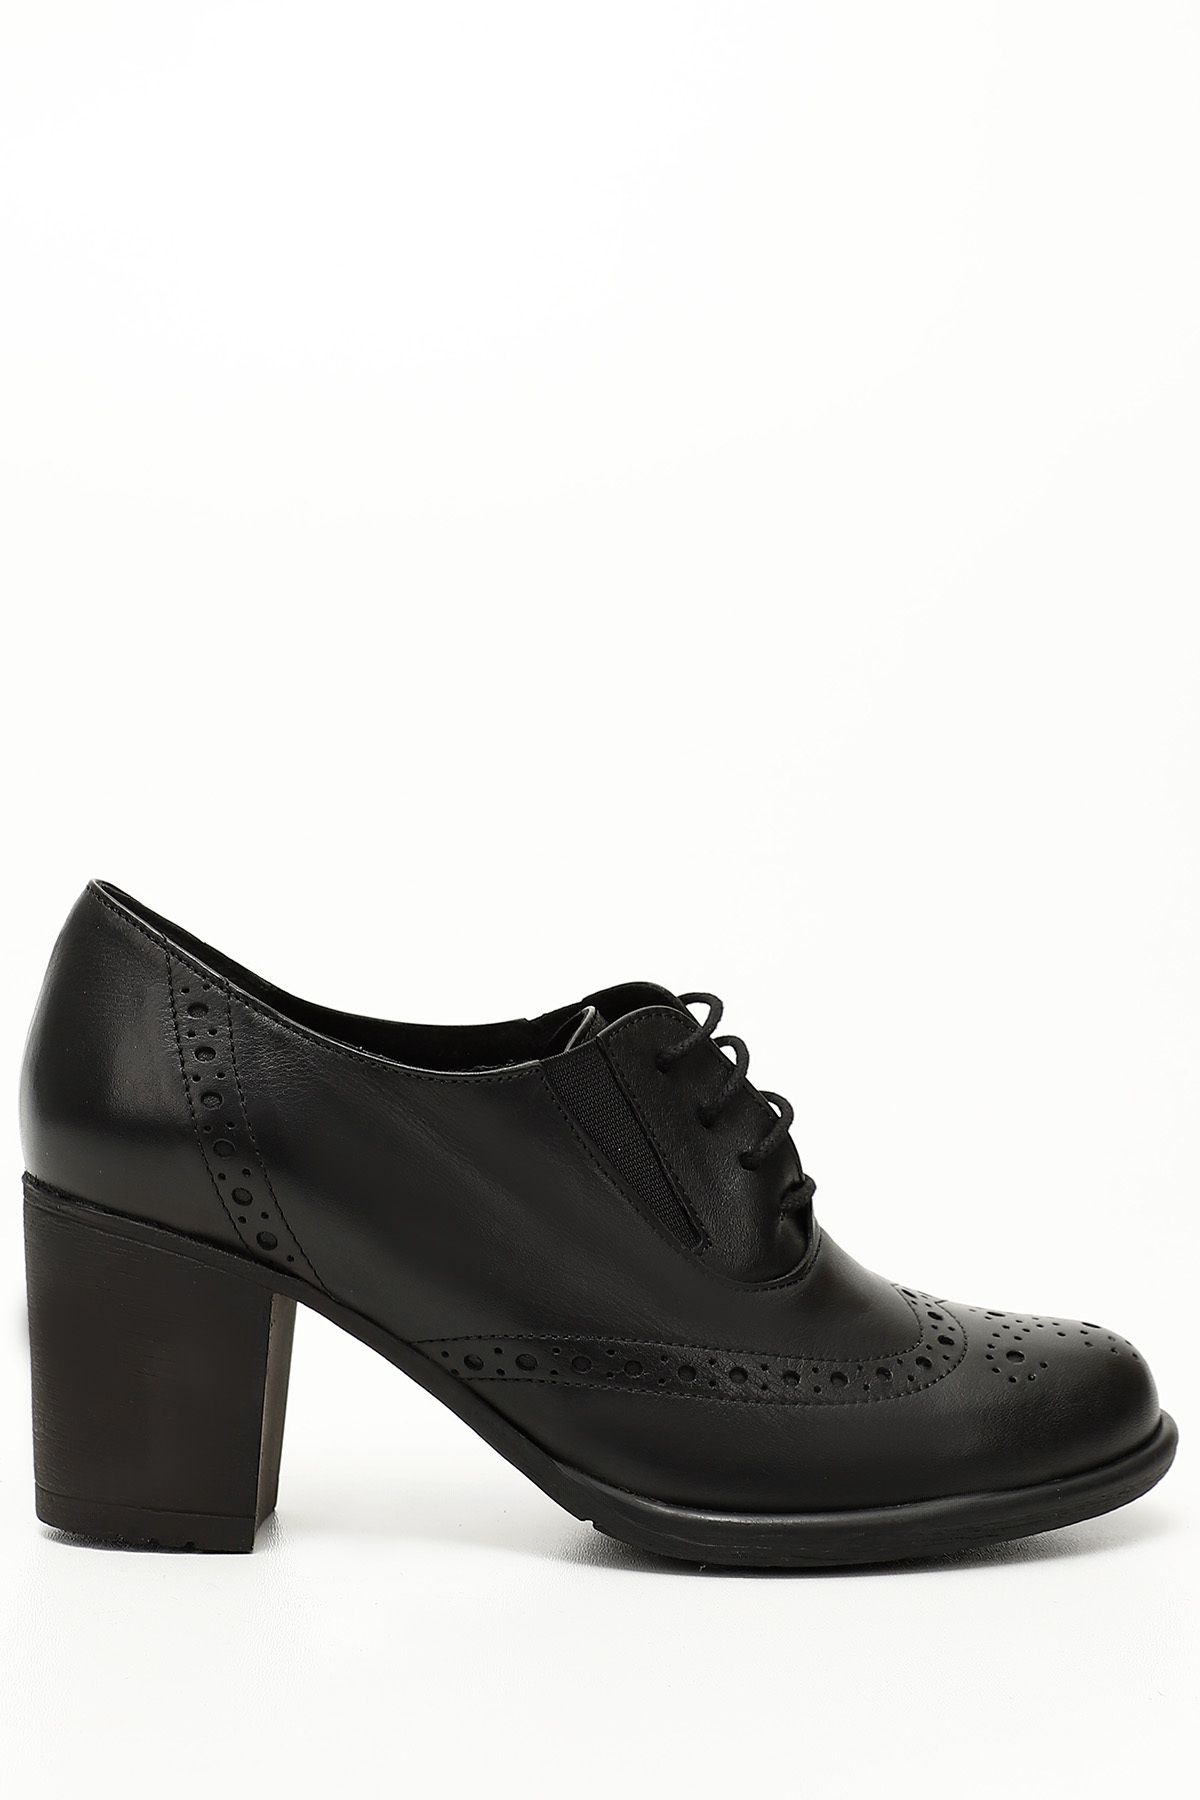 GÖNDERİ(R) Siyah Gön Hakiki Deri Yuvarlak Burun Kalın Topuklu Kauçuk Taban Bağcıklı Kadın Ayakkabı 24040